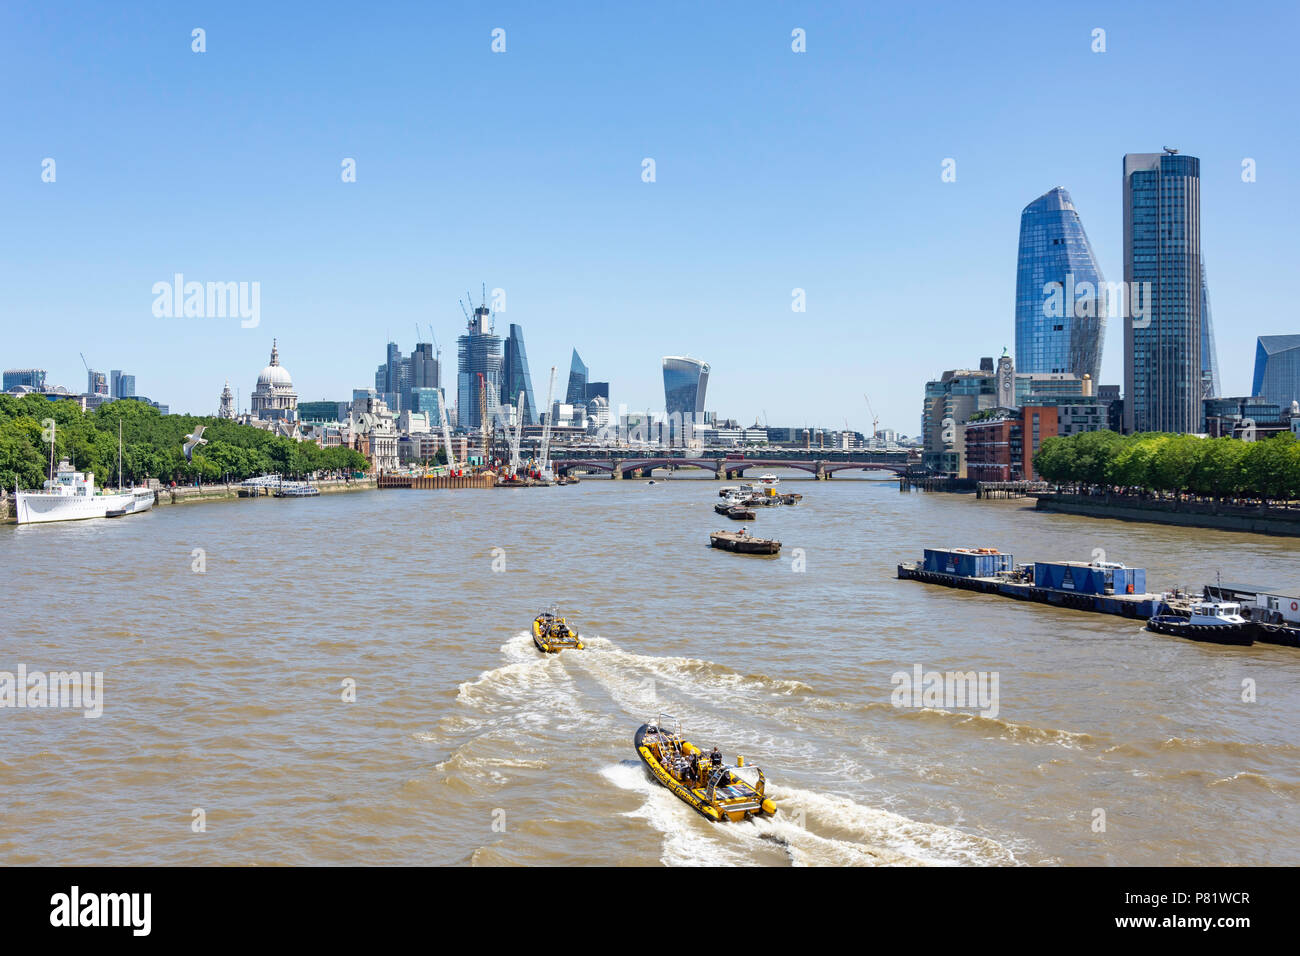 Ville de Londres et la Tamise de Waterloo Bridge, South Bank, Greater London, Angleterre, Royaume-Uni Banque D'Images